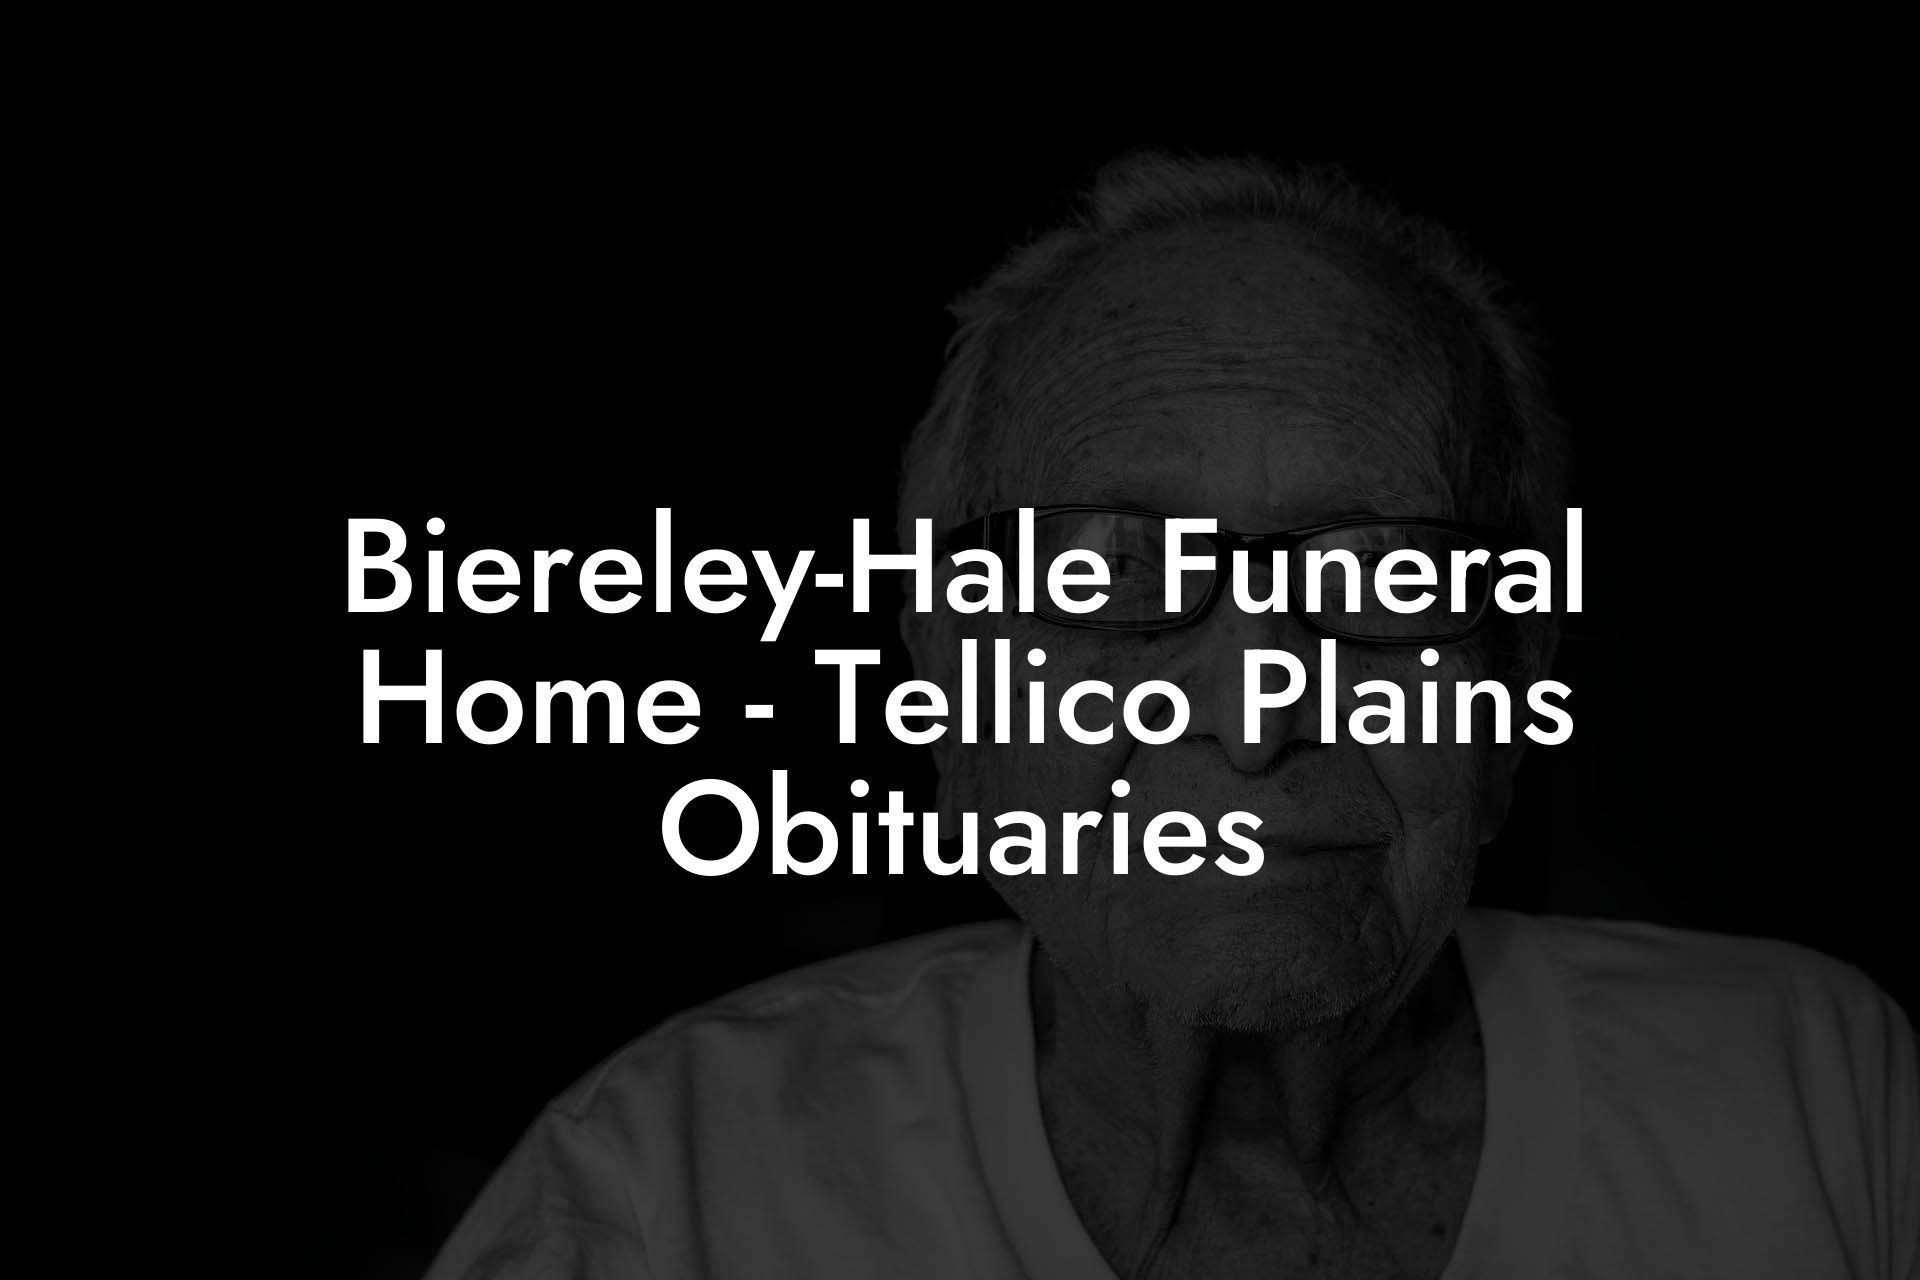 Biereley-Hale Funeral Home - Tellico Plains Obituaries